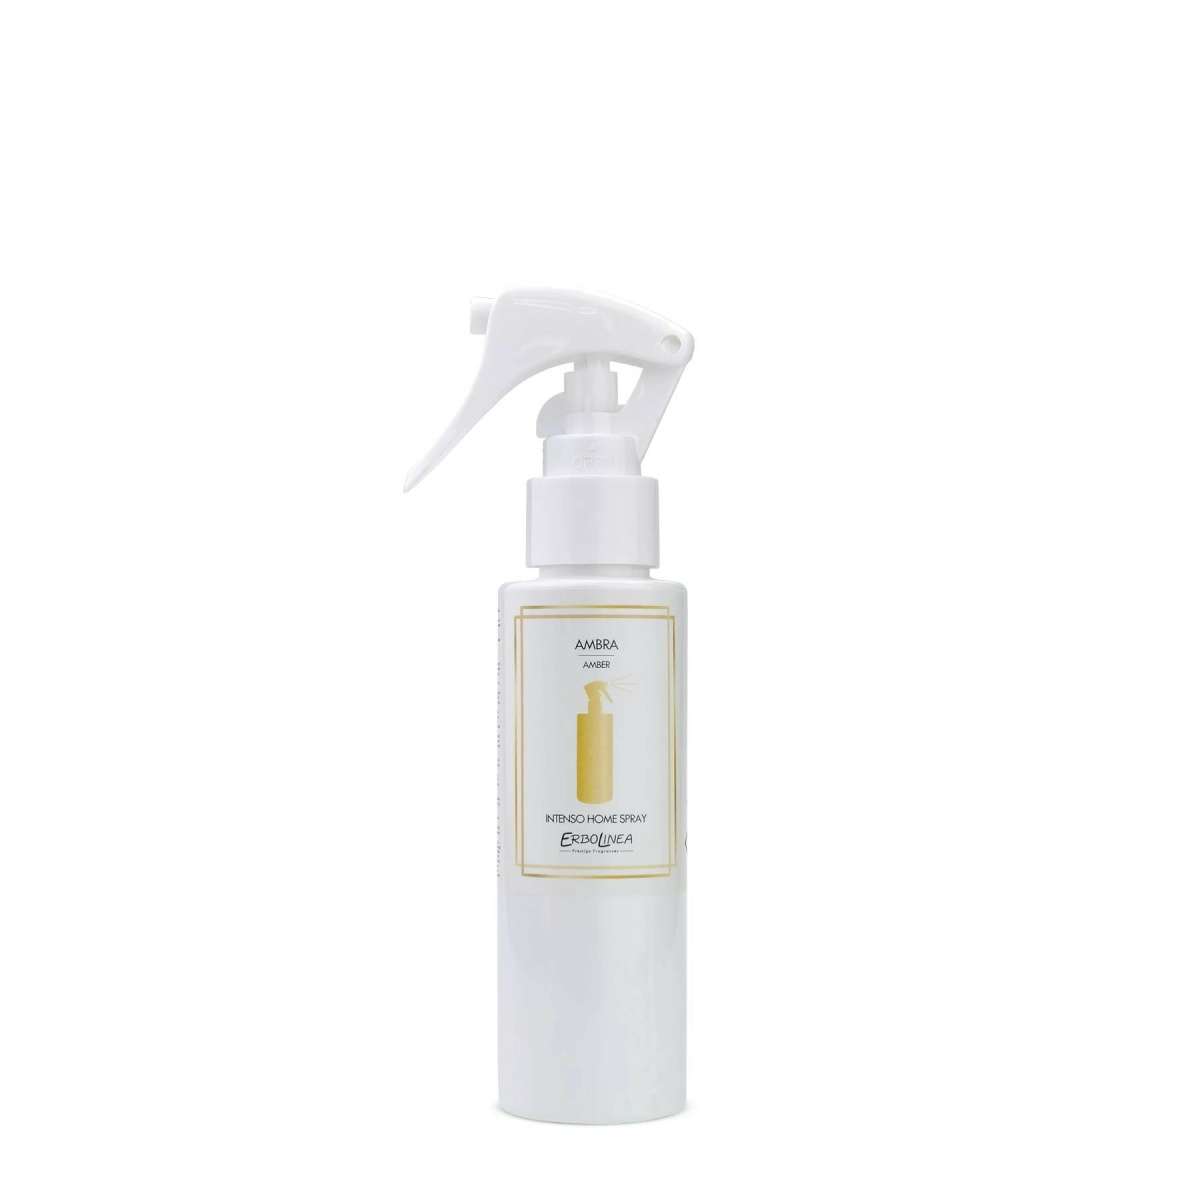 Immagine del prodotto Home Spray per Ambiente Ambra 100 ml | Erbolinea